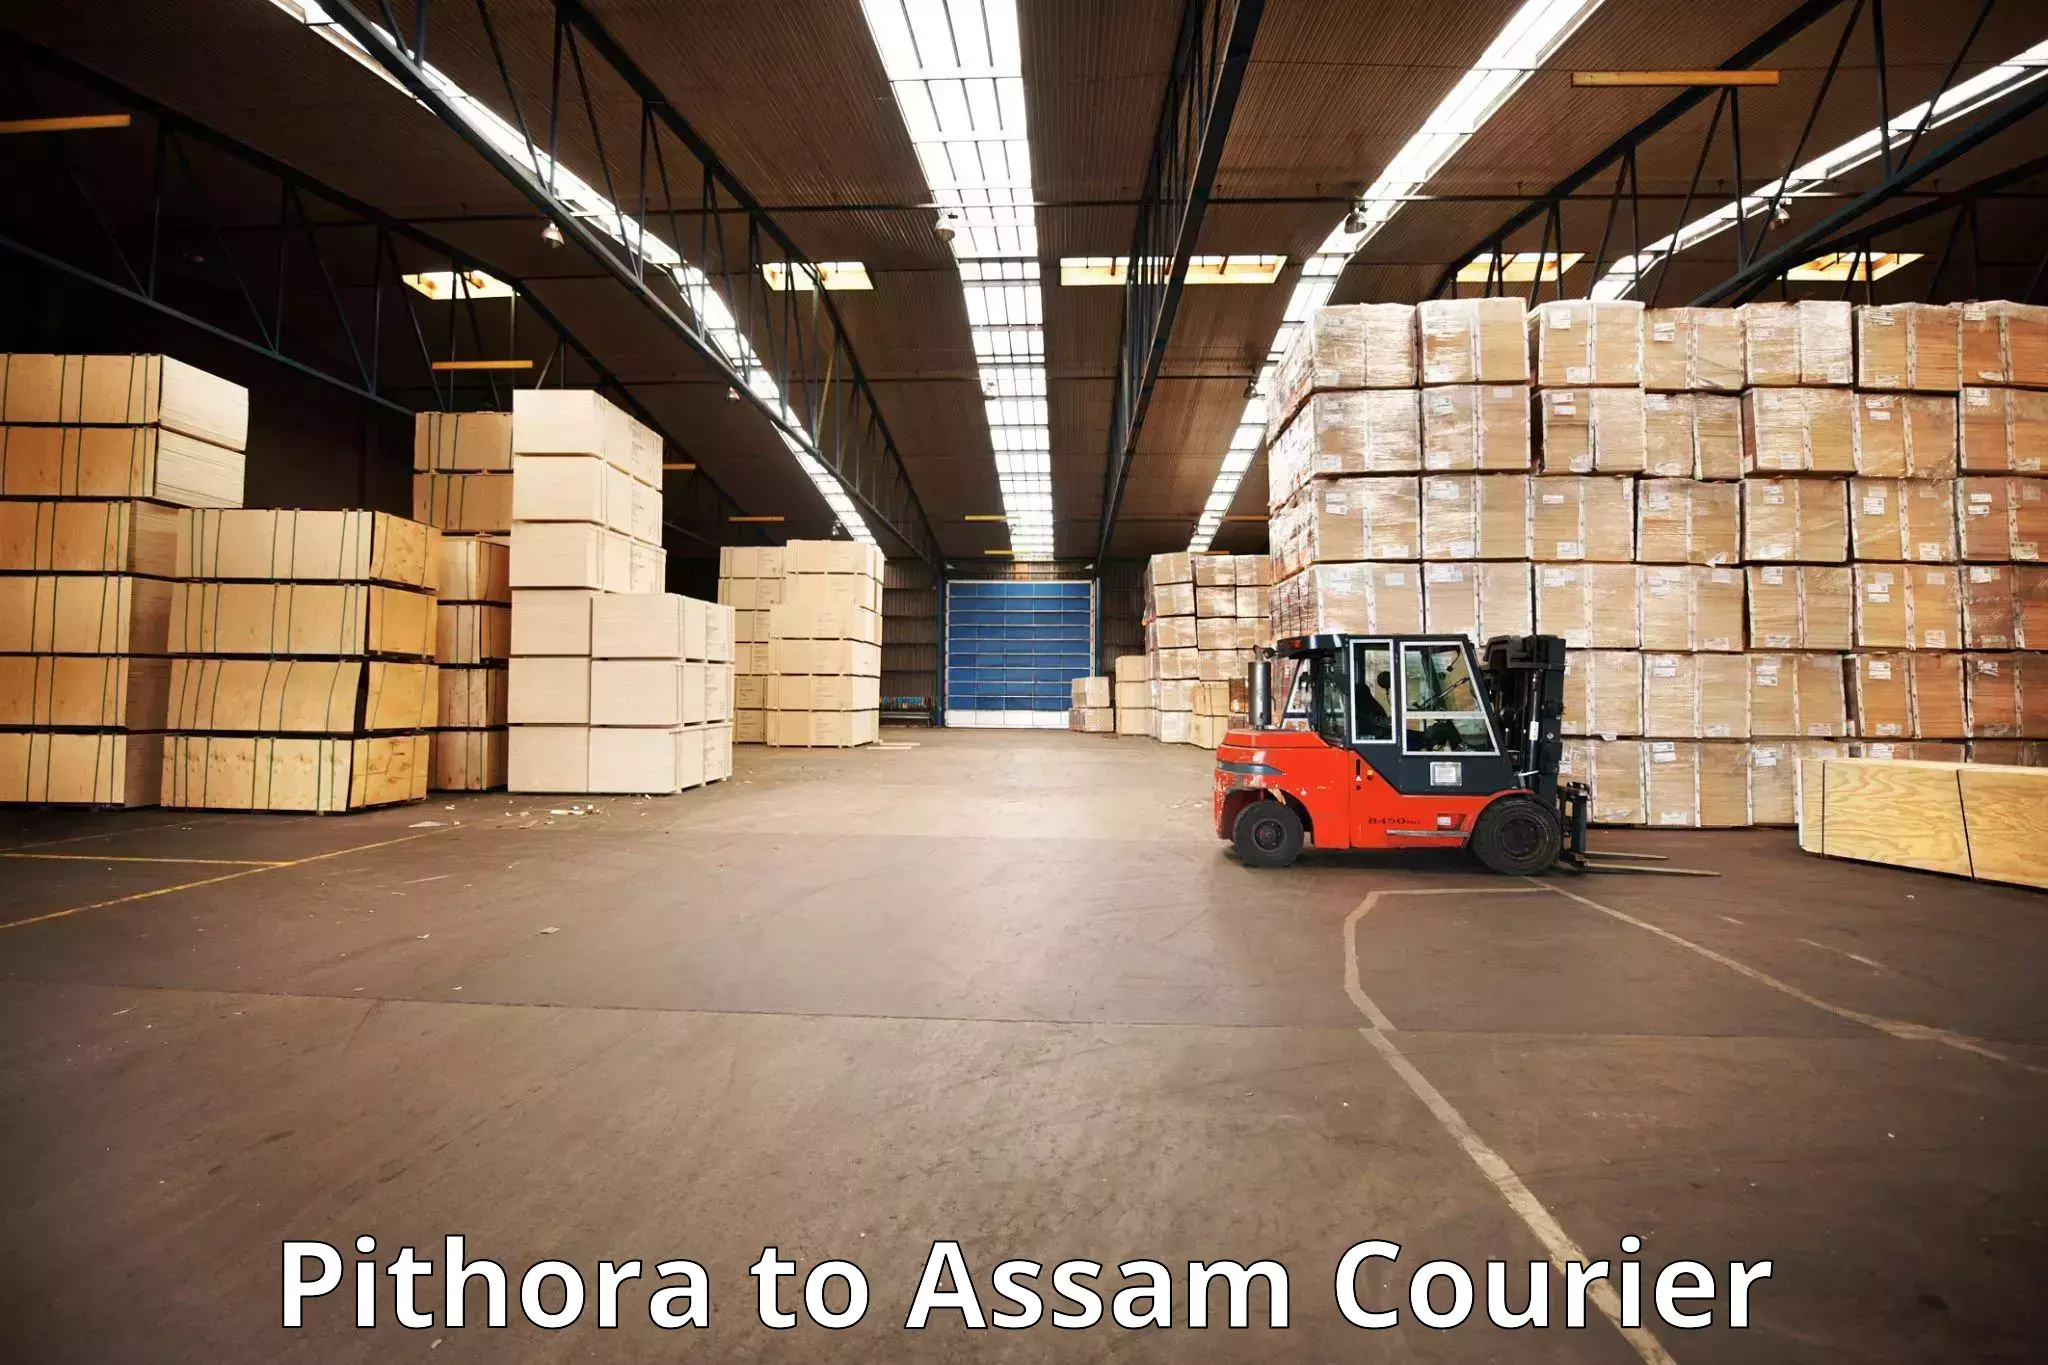 Hassle-free luggage shipping Pithora to Rangia